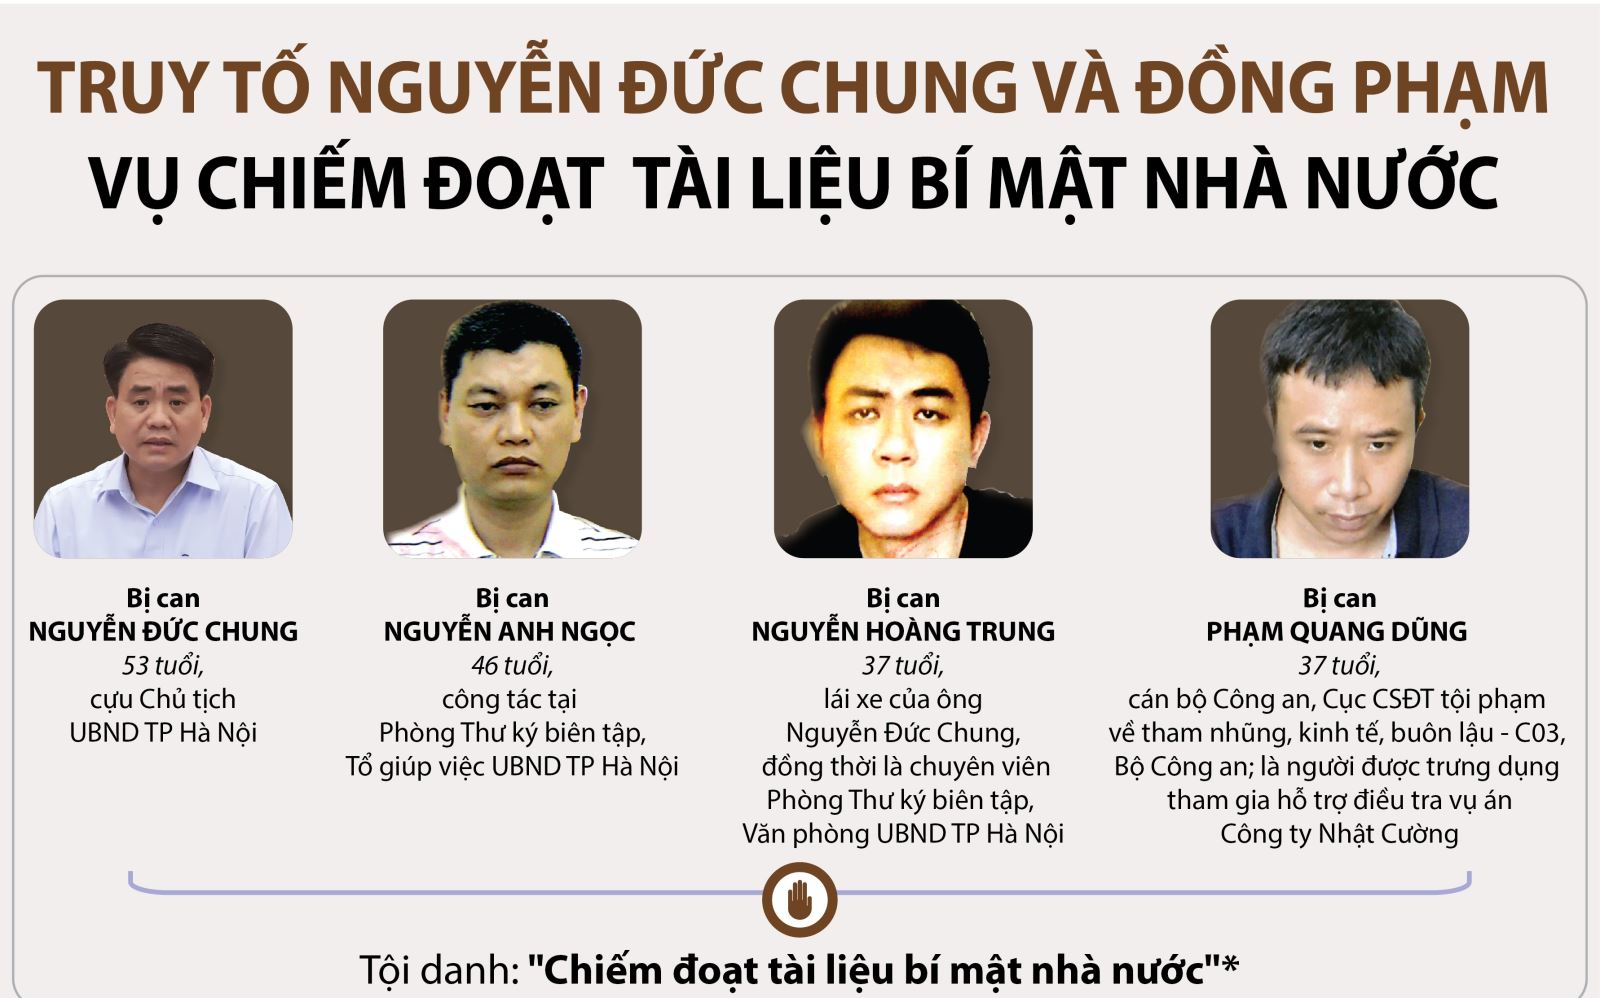 Xét xử kín vụ án bị cáo Nguyễn Đức Chung chiếm đoạt tài liệu bí mật Nhà nước